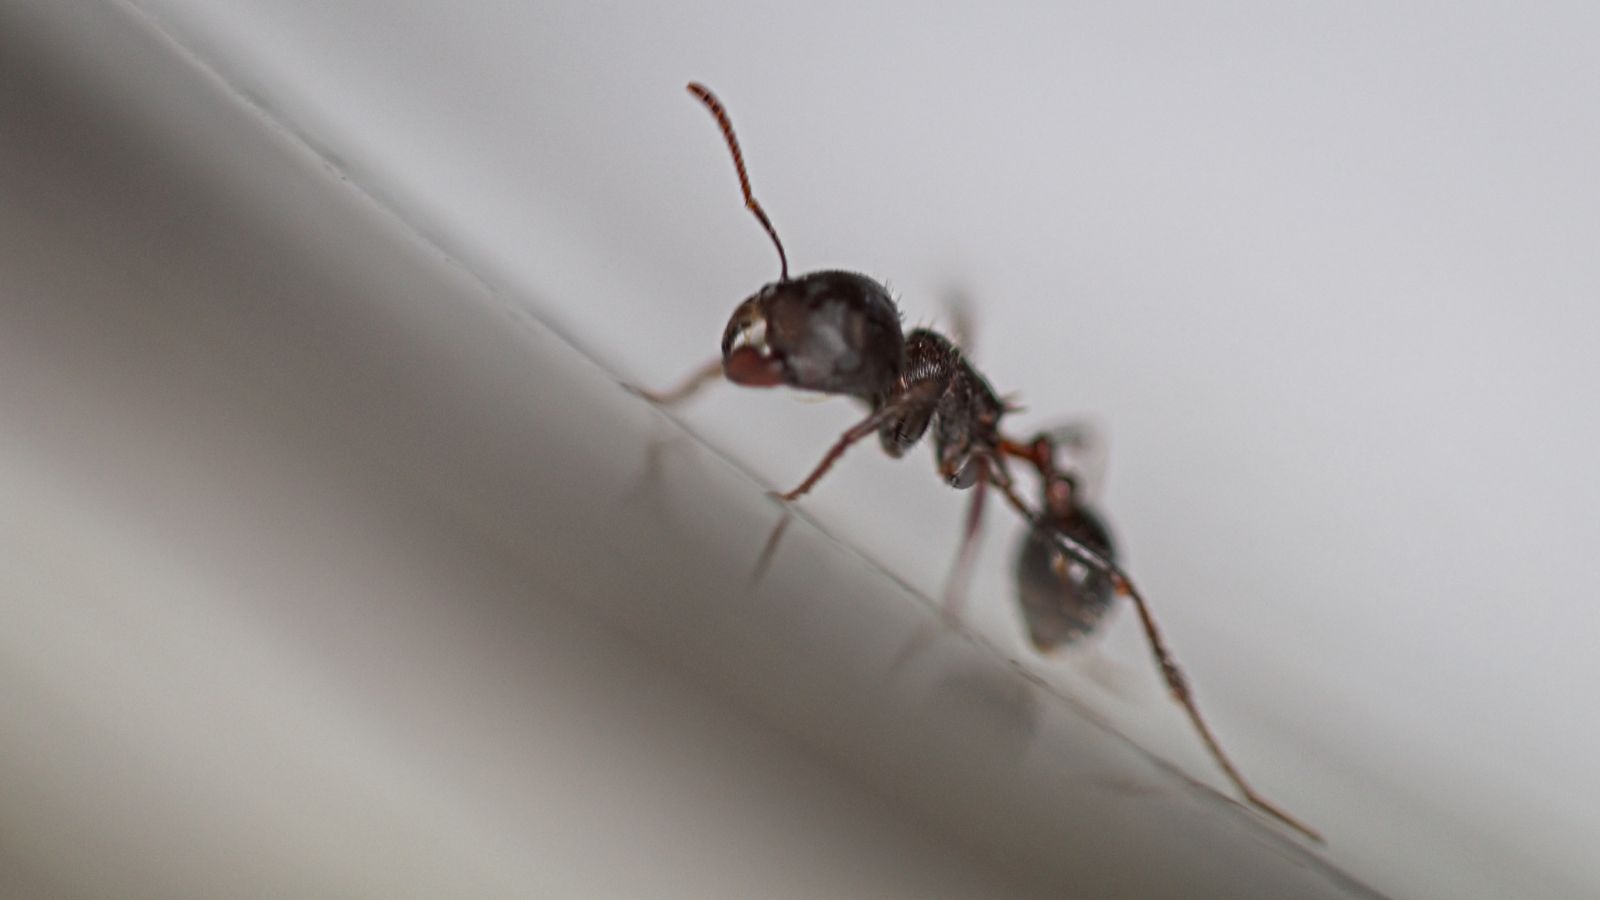 Ants 8